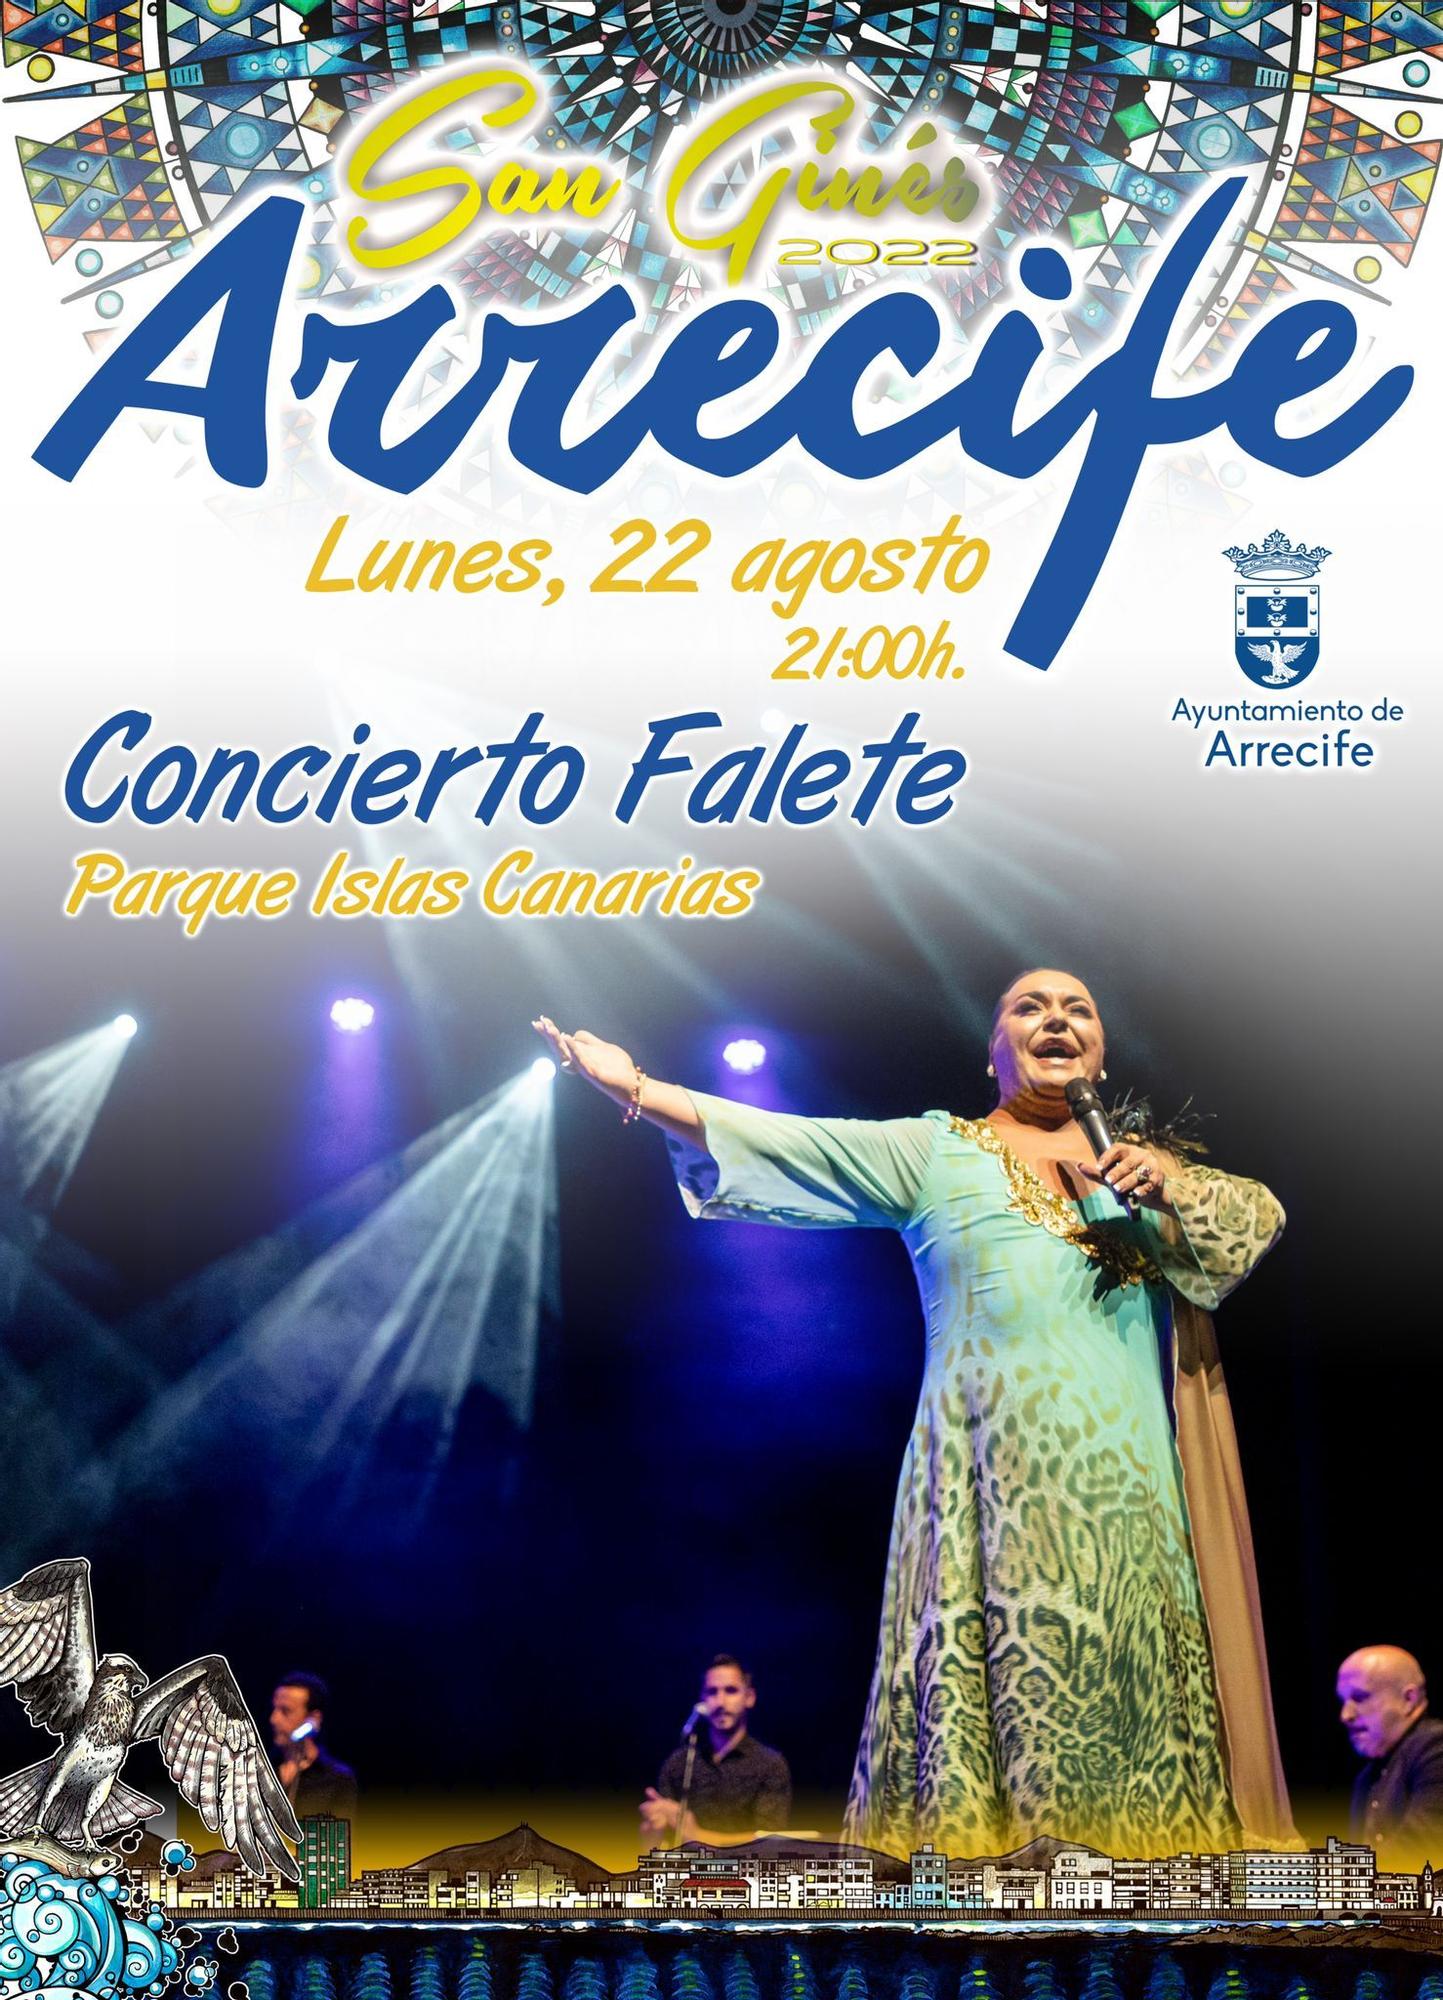 Cartel del concierto de Falete en Arrecife.